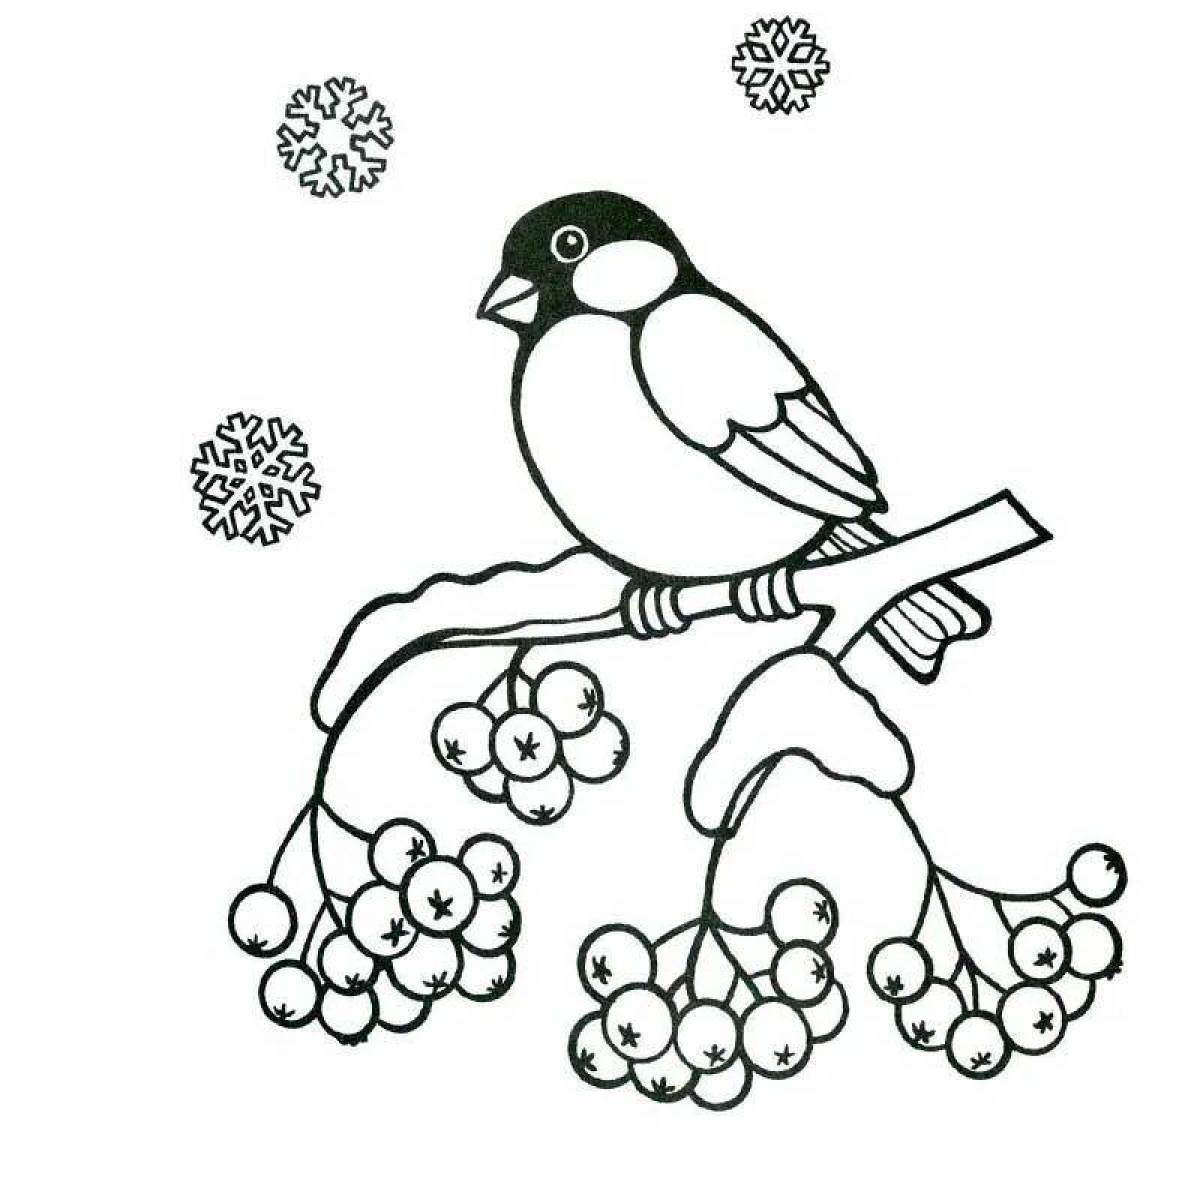 Раскраска птицы зимующие-Снегирь,синица